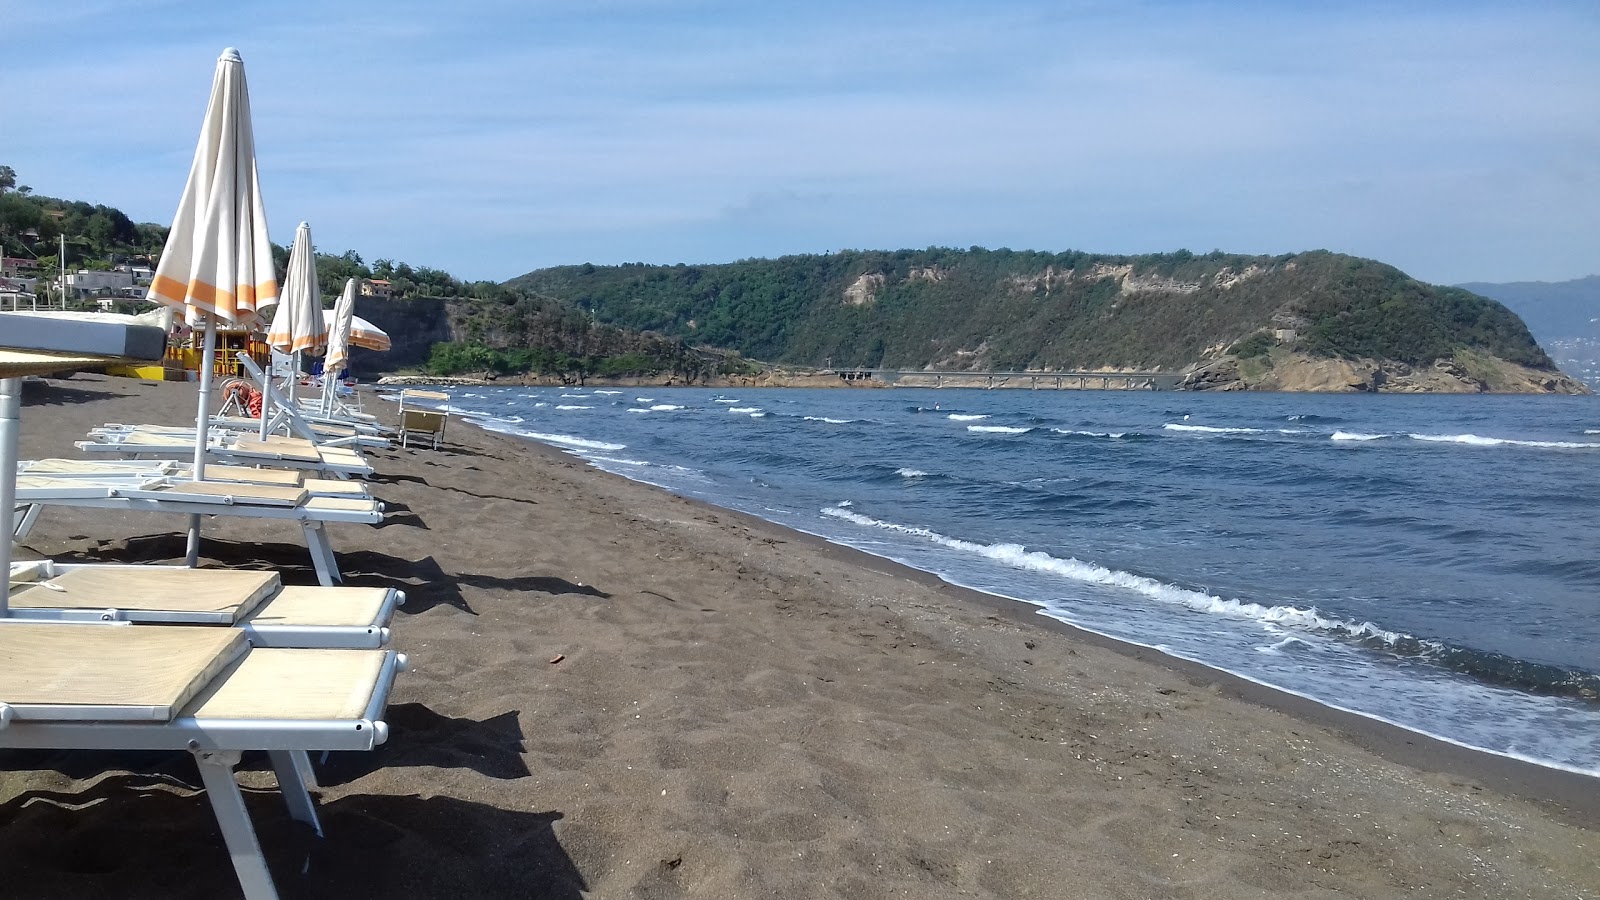 Foto de Spiaggia di Ciraccio - lugar popular entre los conocedores del relax